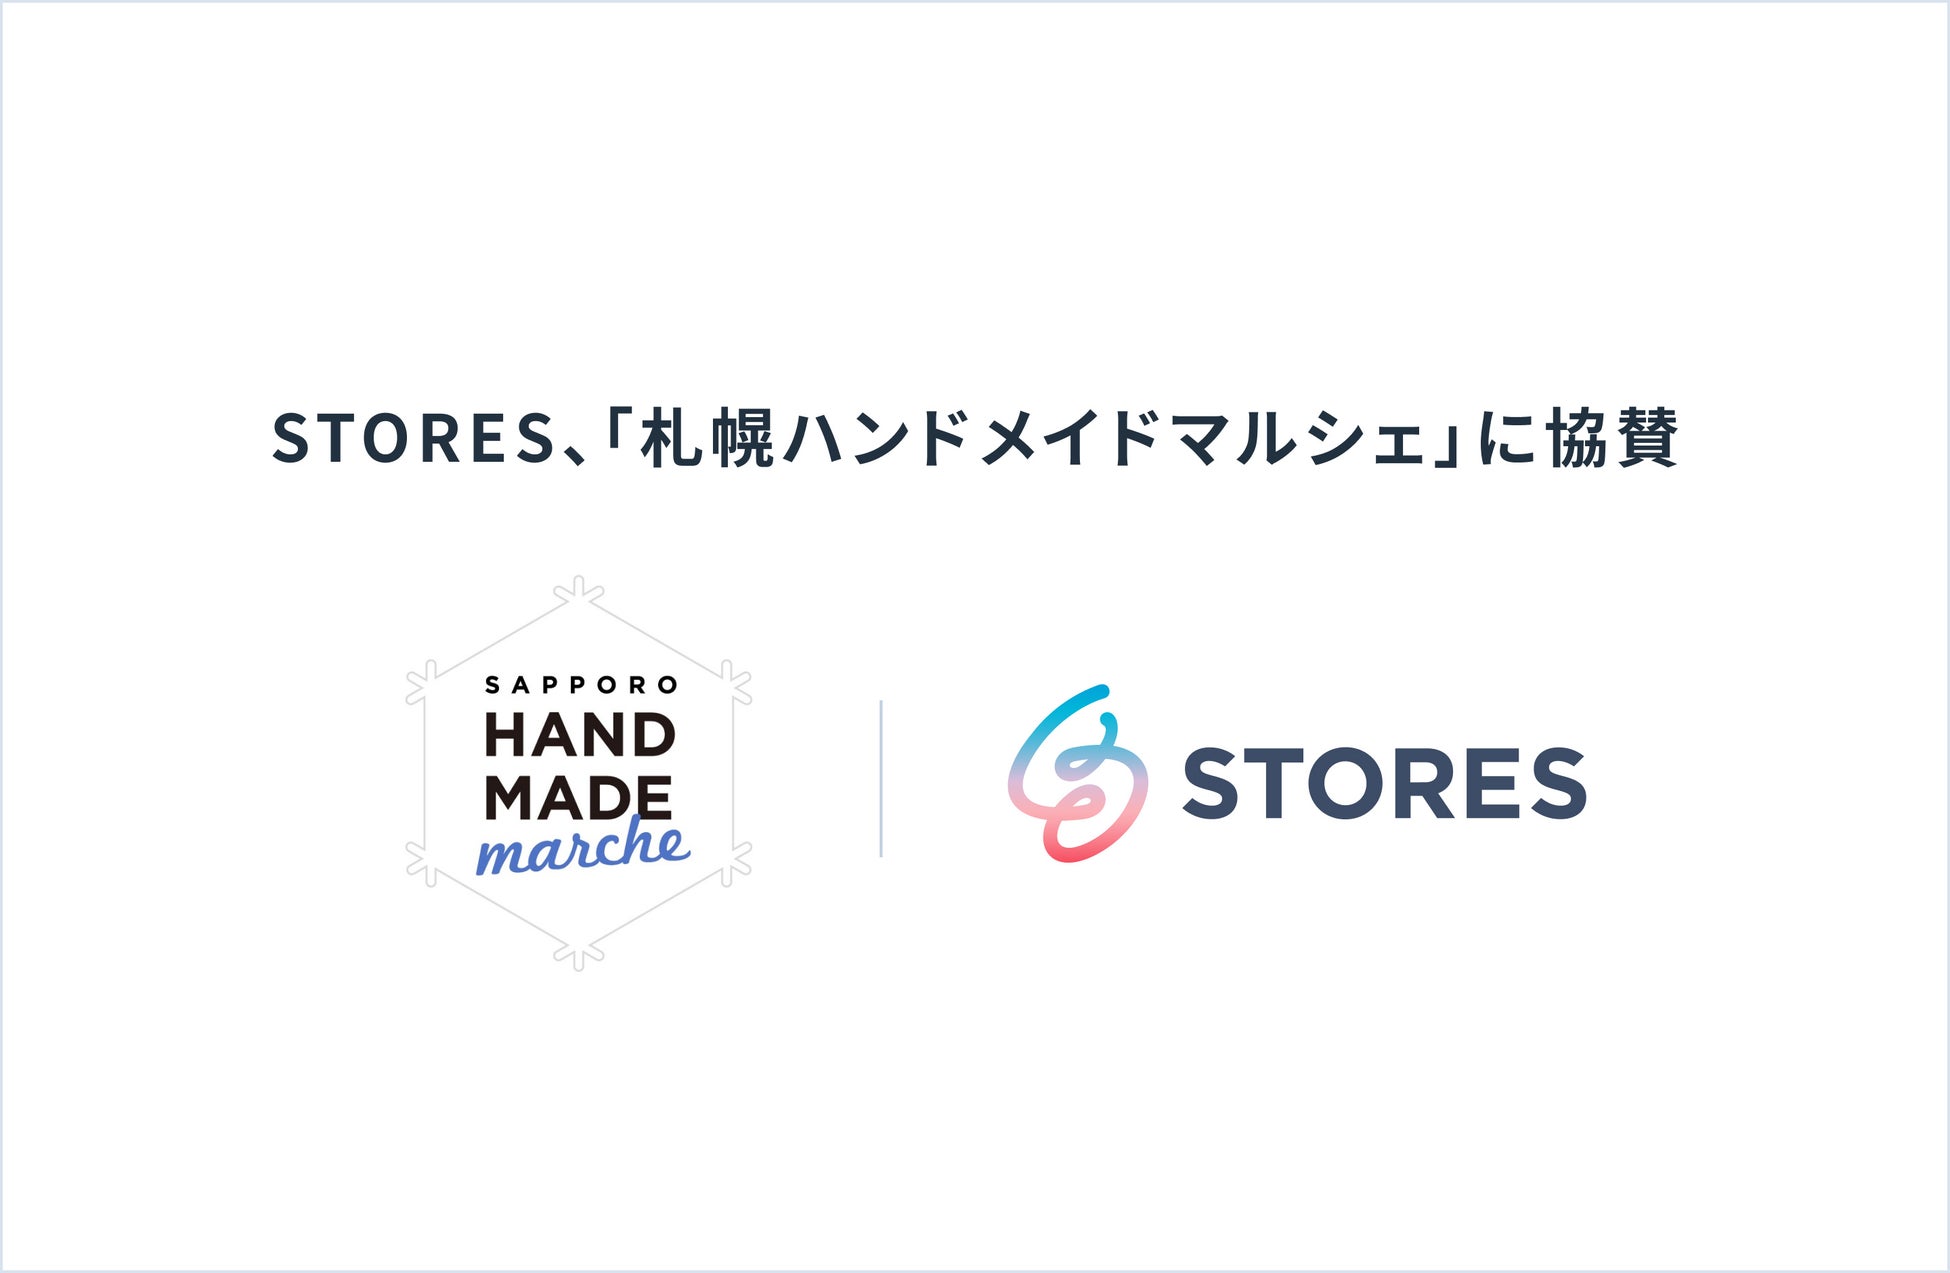 STORES、 「札幌ハンドメイドマルシェ」に協賛